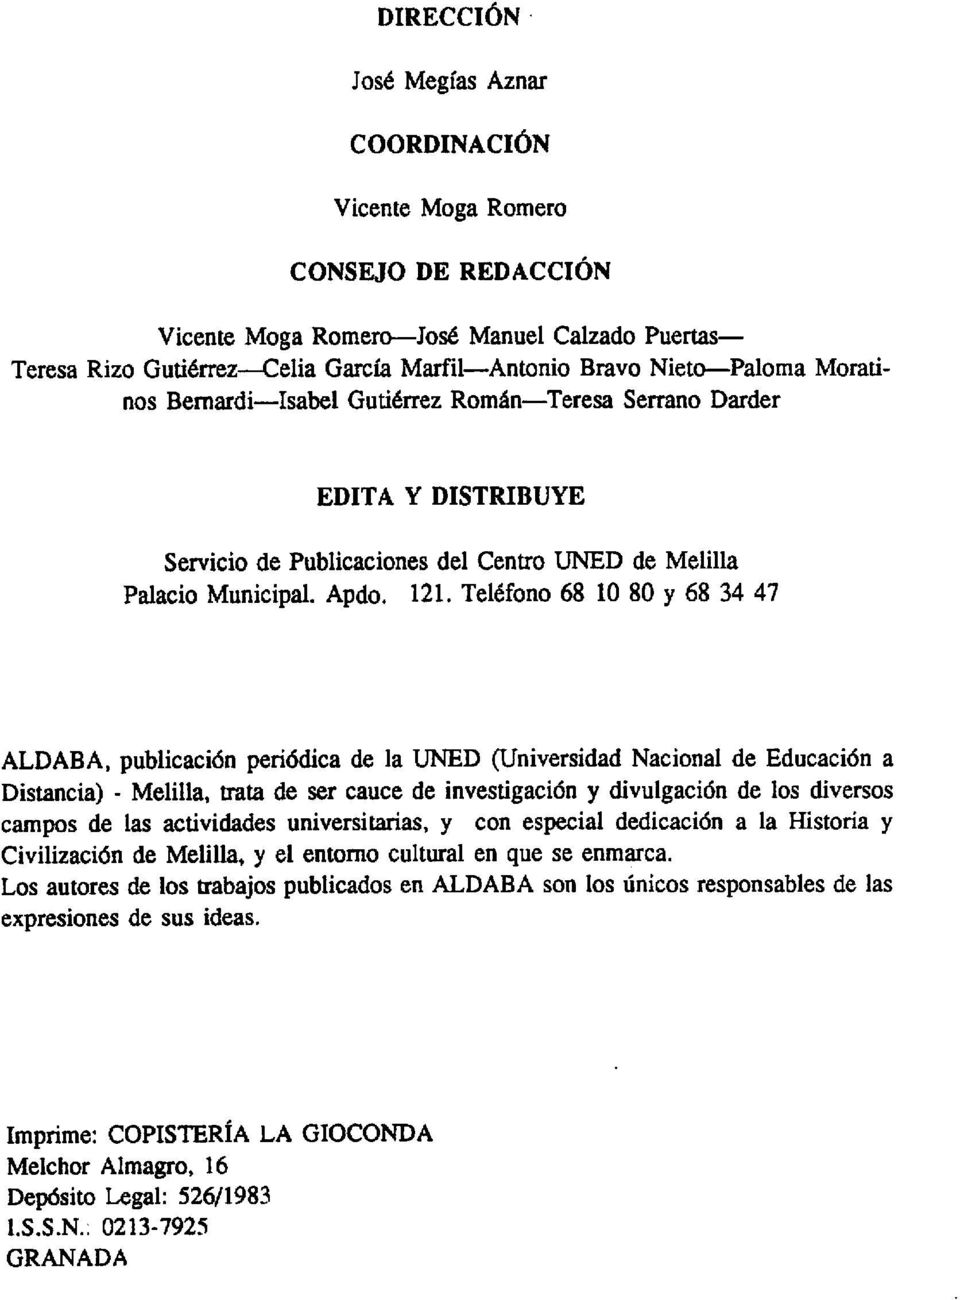 Teléfono 68 10 80 y 68 34 47 ALDABA, publicación periódica de la UNED (Universidad Nacional de Educación a Distancia) - Melilla, trata de ser cauce de investigación y divulgación de los diversos